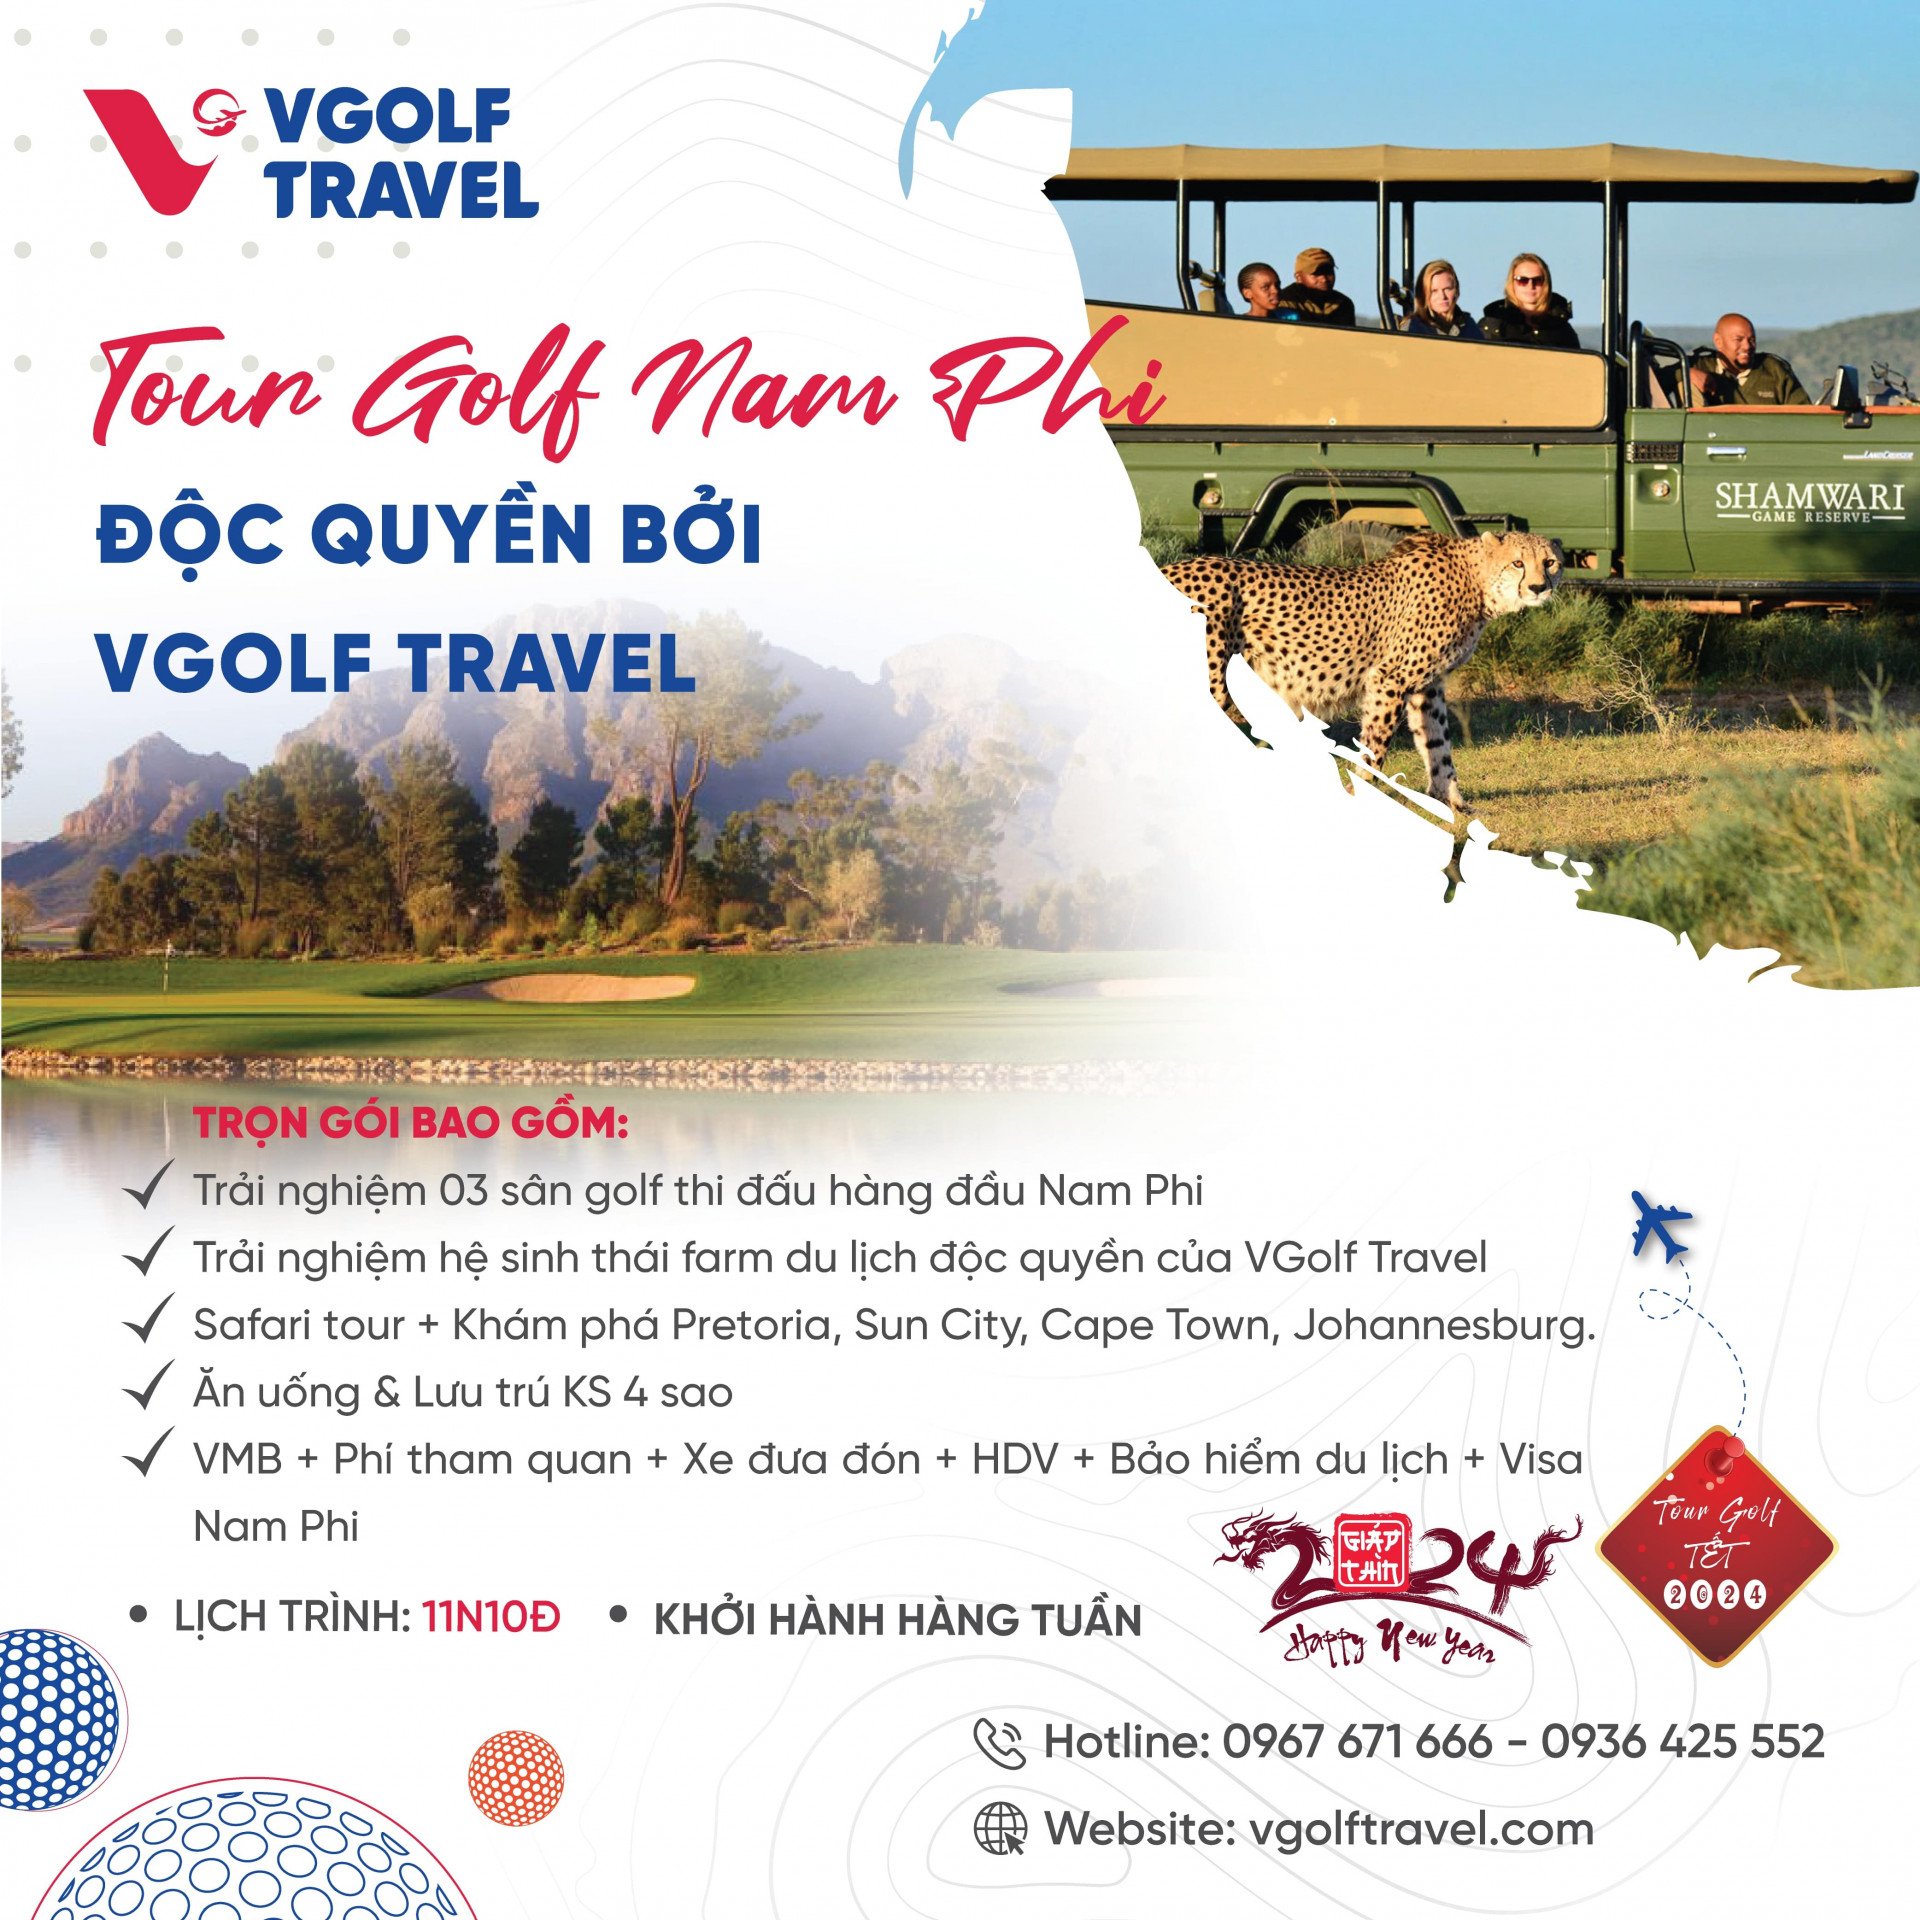 2. Tour golf Nam Phi - Hành trình golf độc quyền chỉ có tại VGolf Travel (Tour Tết Dương lịch & Âm lịch)